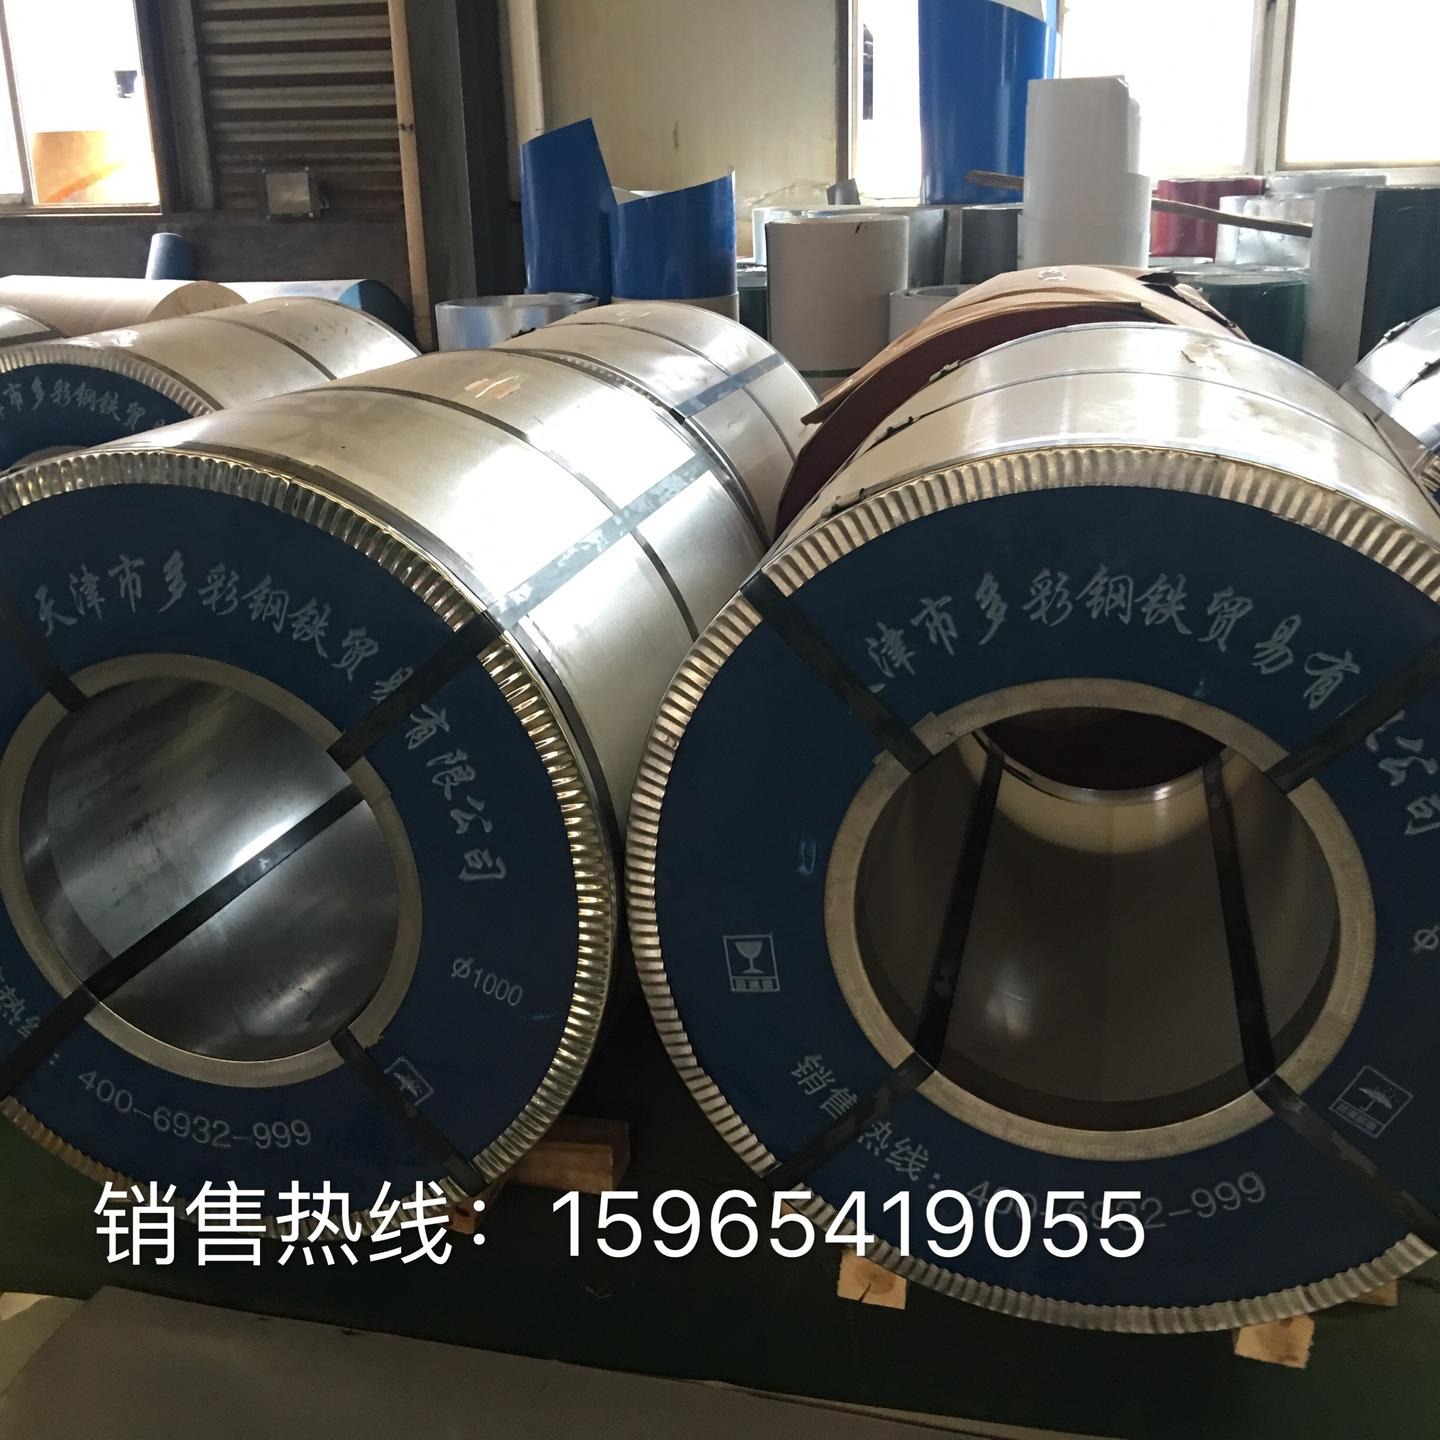 天津多彩钢铁贸易有限公司主要生产镀锌板 彩涂板